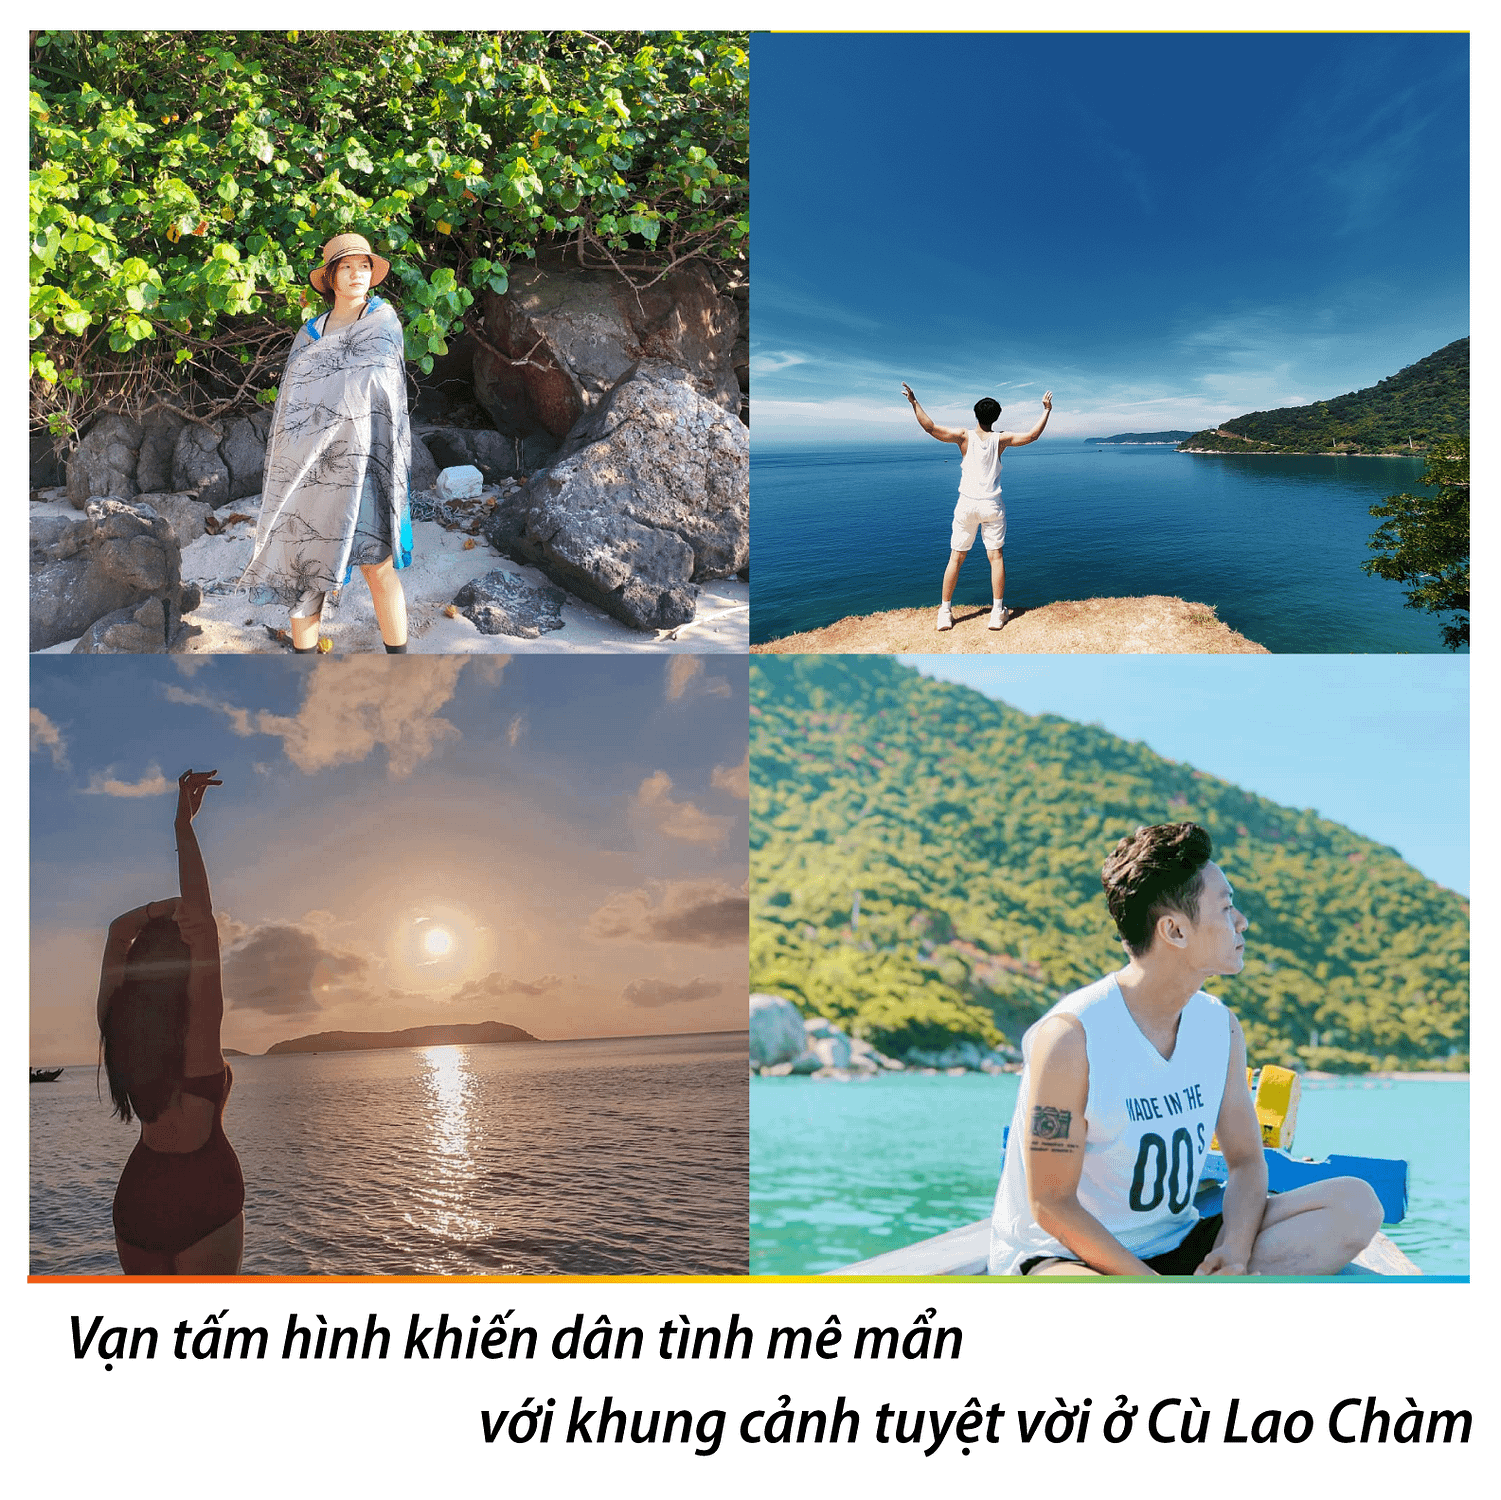 Giá vé Cù Lao Chàm